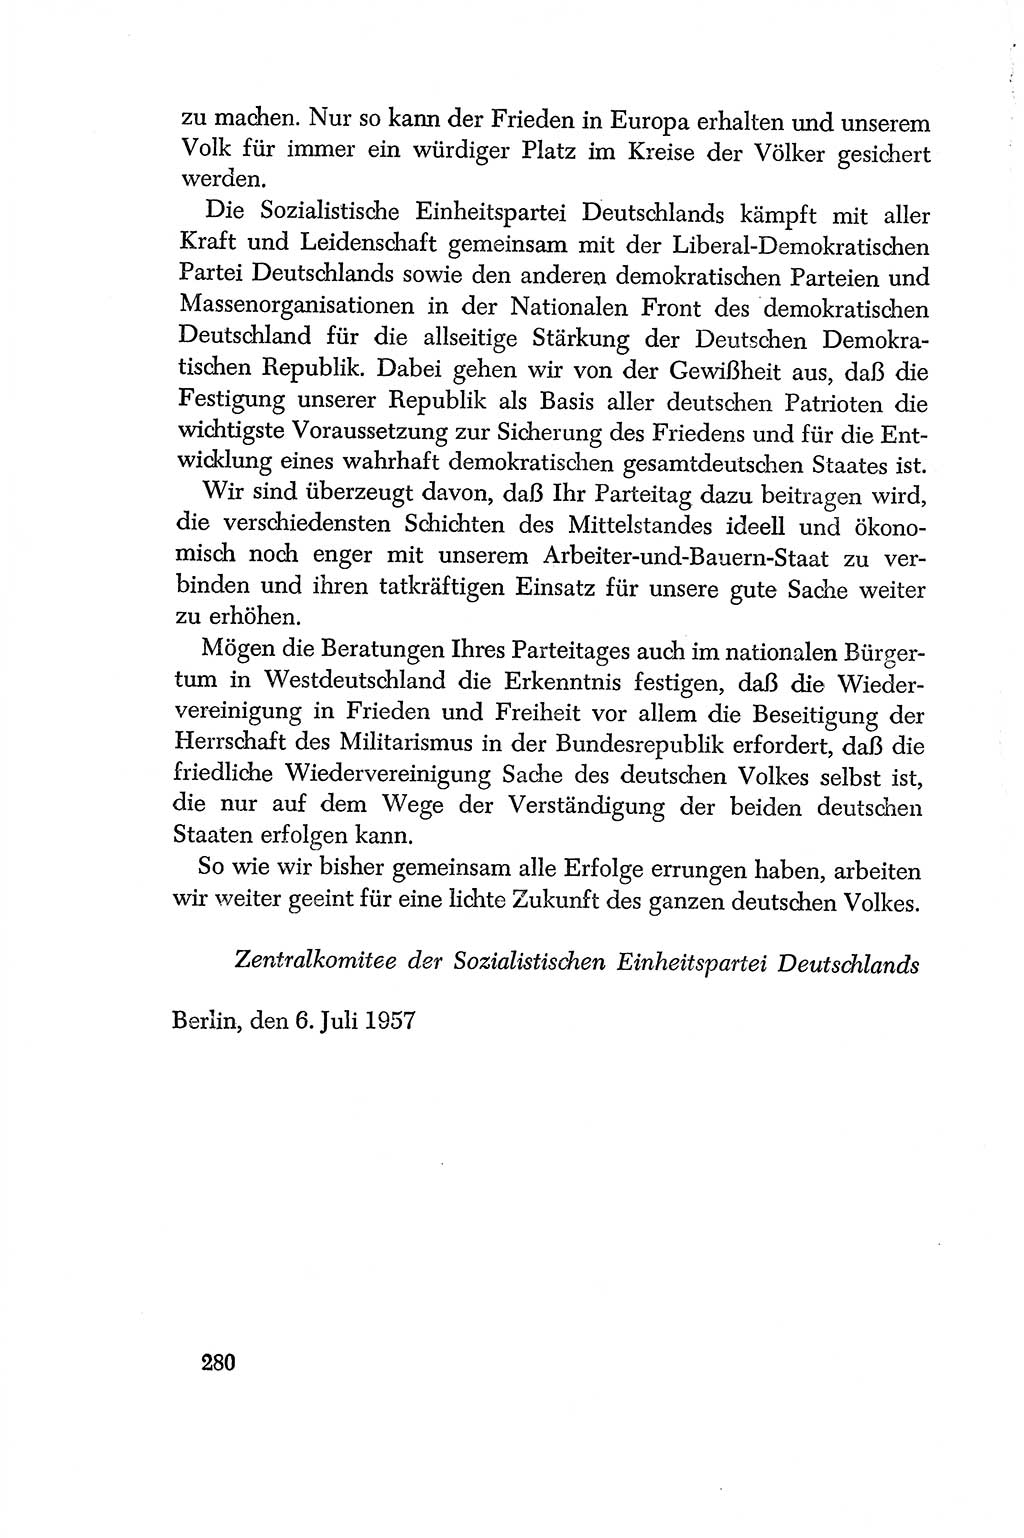 Dokumente der Sozialistischen Einheitspartei Deutschlands (SED) [Deutsche Demokratische Republik (DDR)] 1956-1957, Seite 280 (Dok. SED DDR 1956-1957, S. 280)